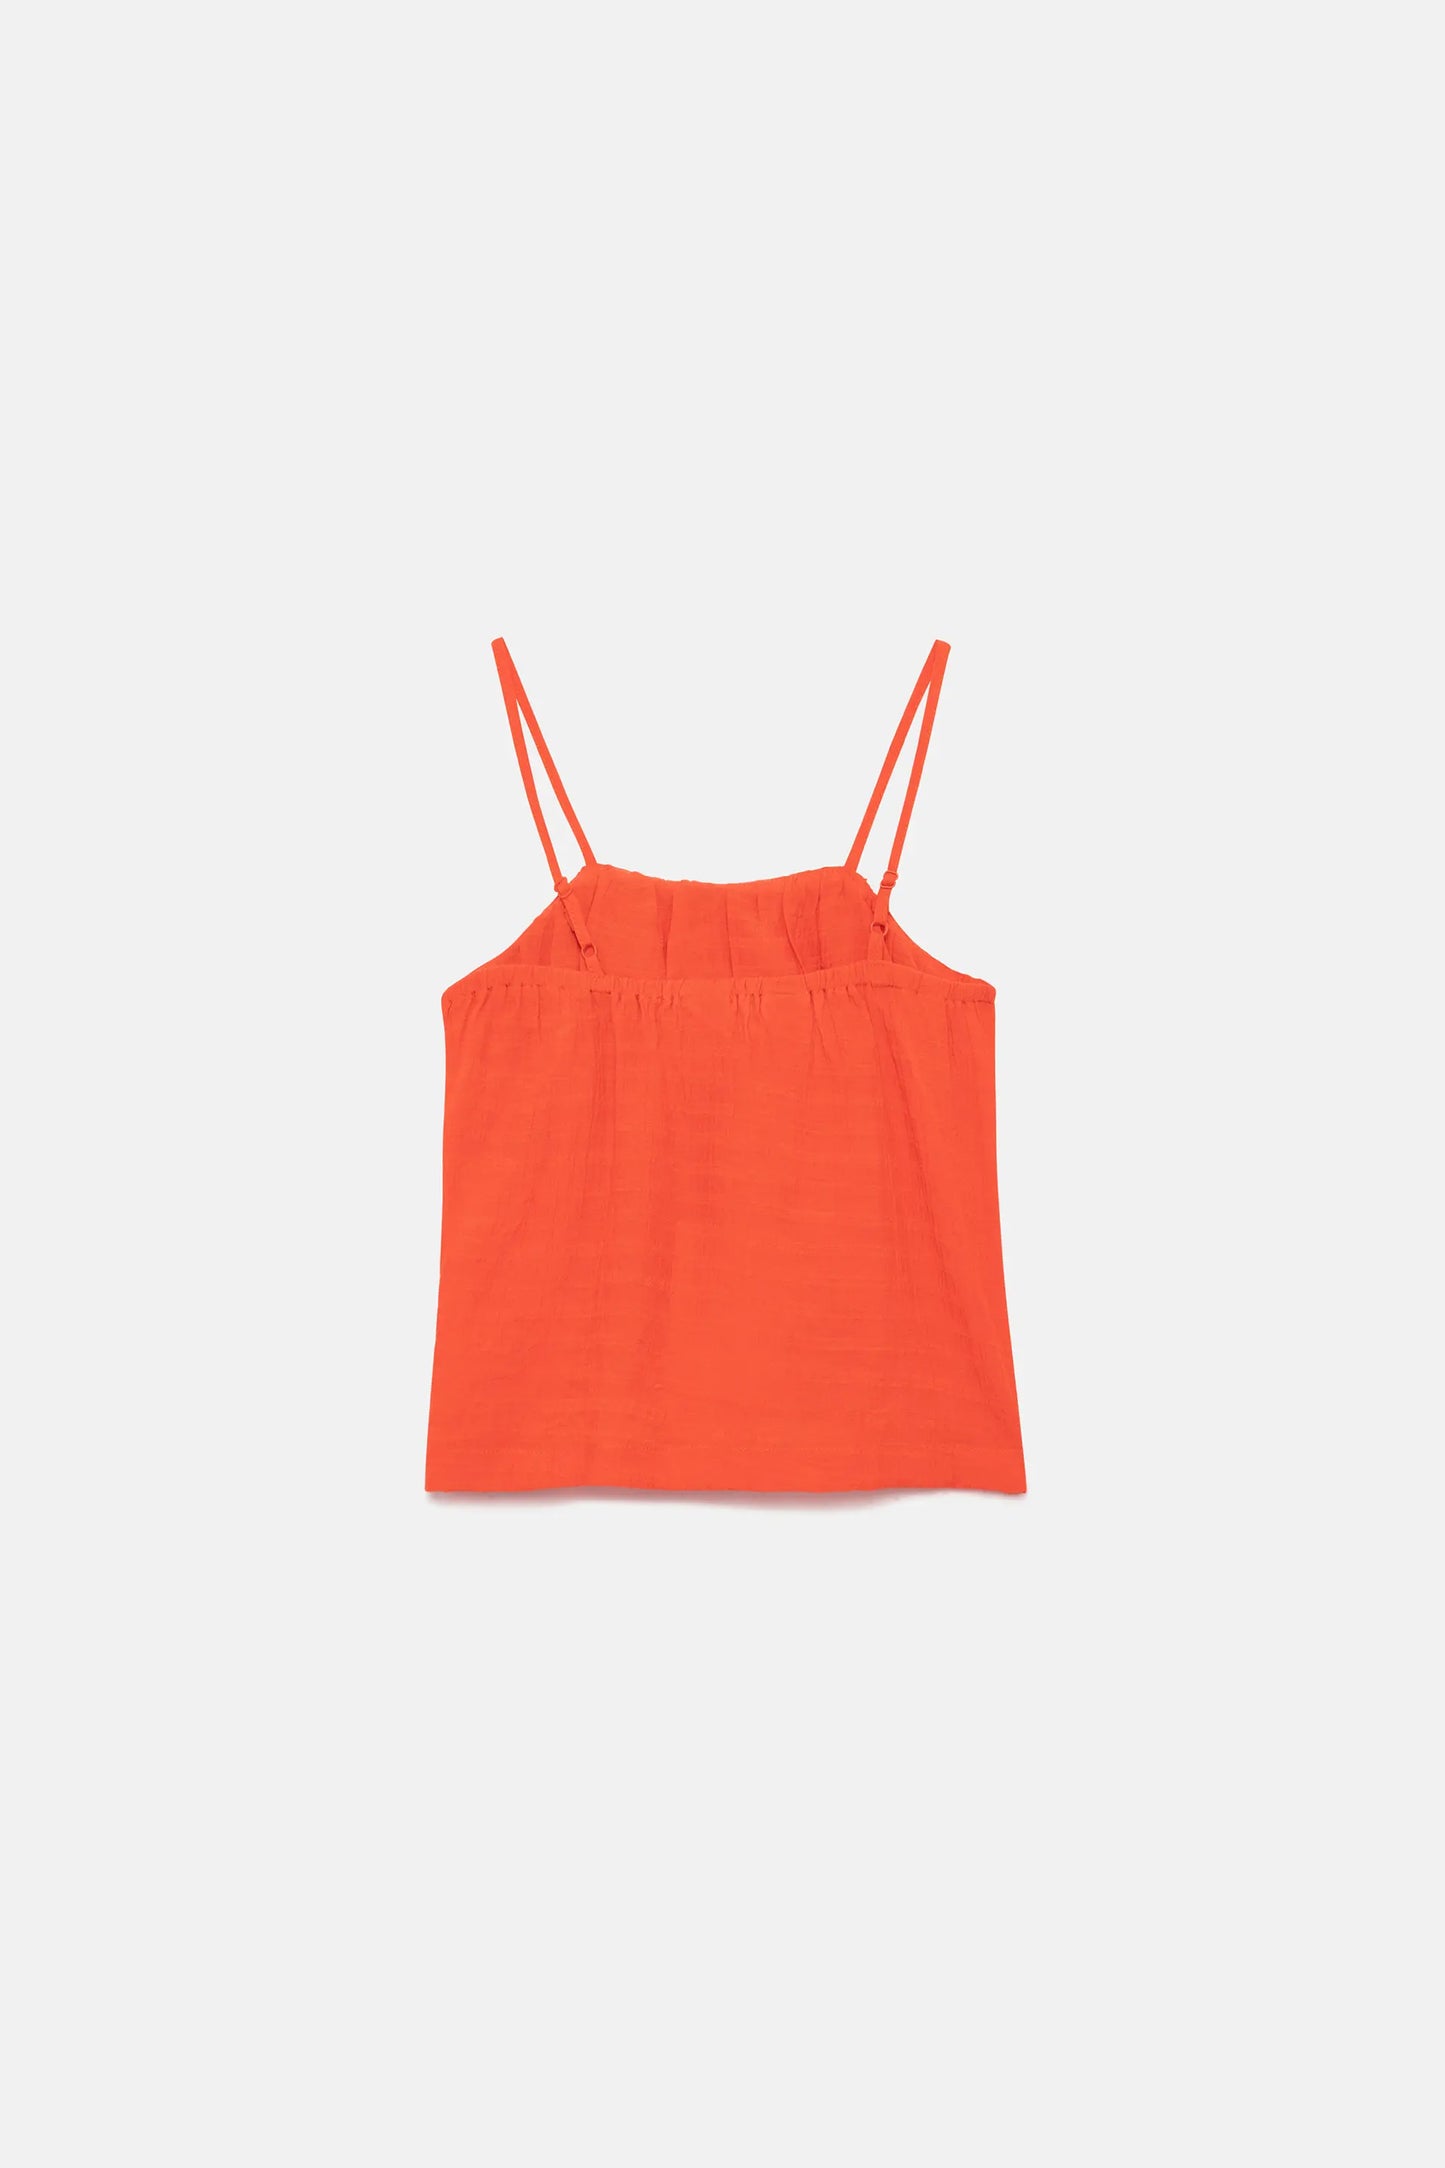 Girl's orange strapless top